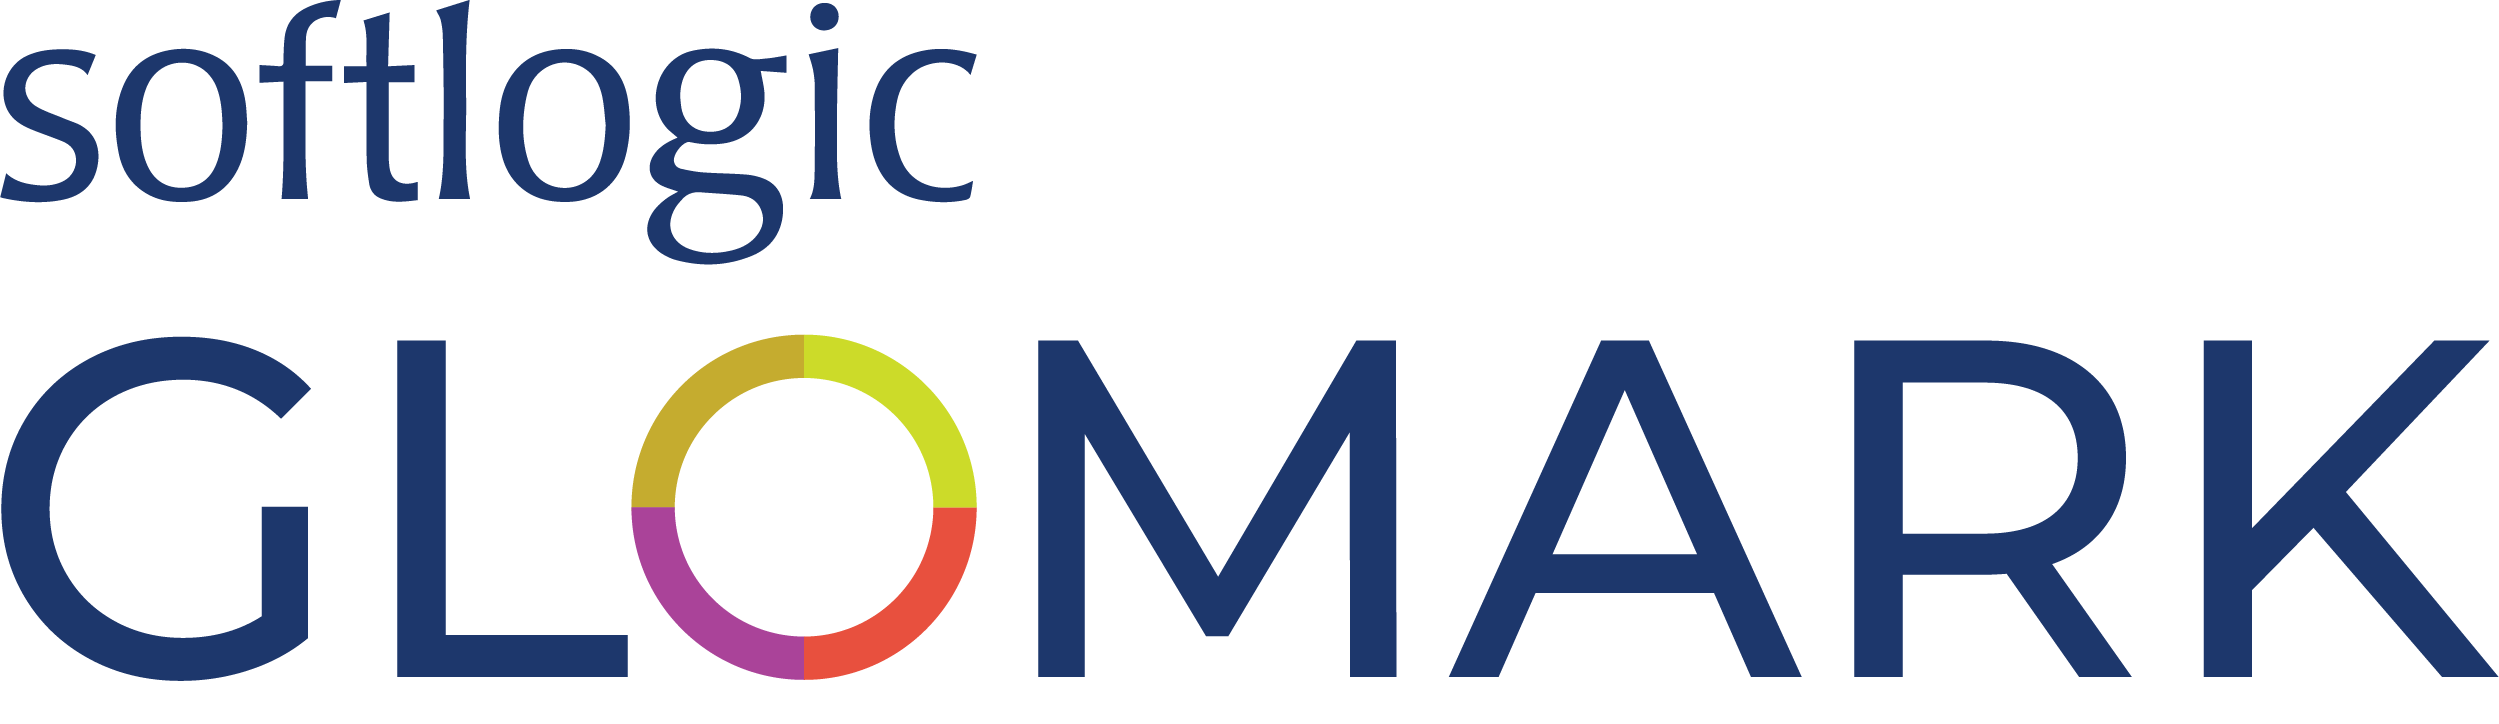 glomark-logo